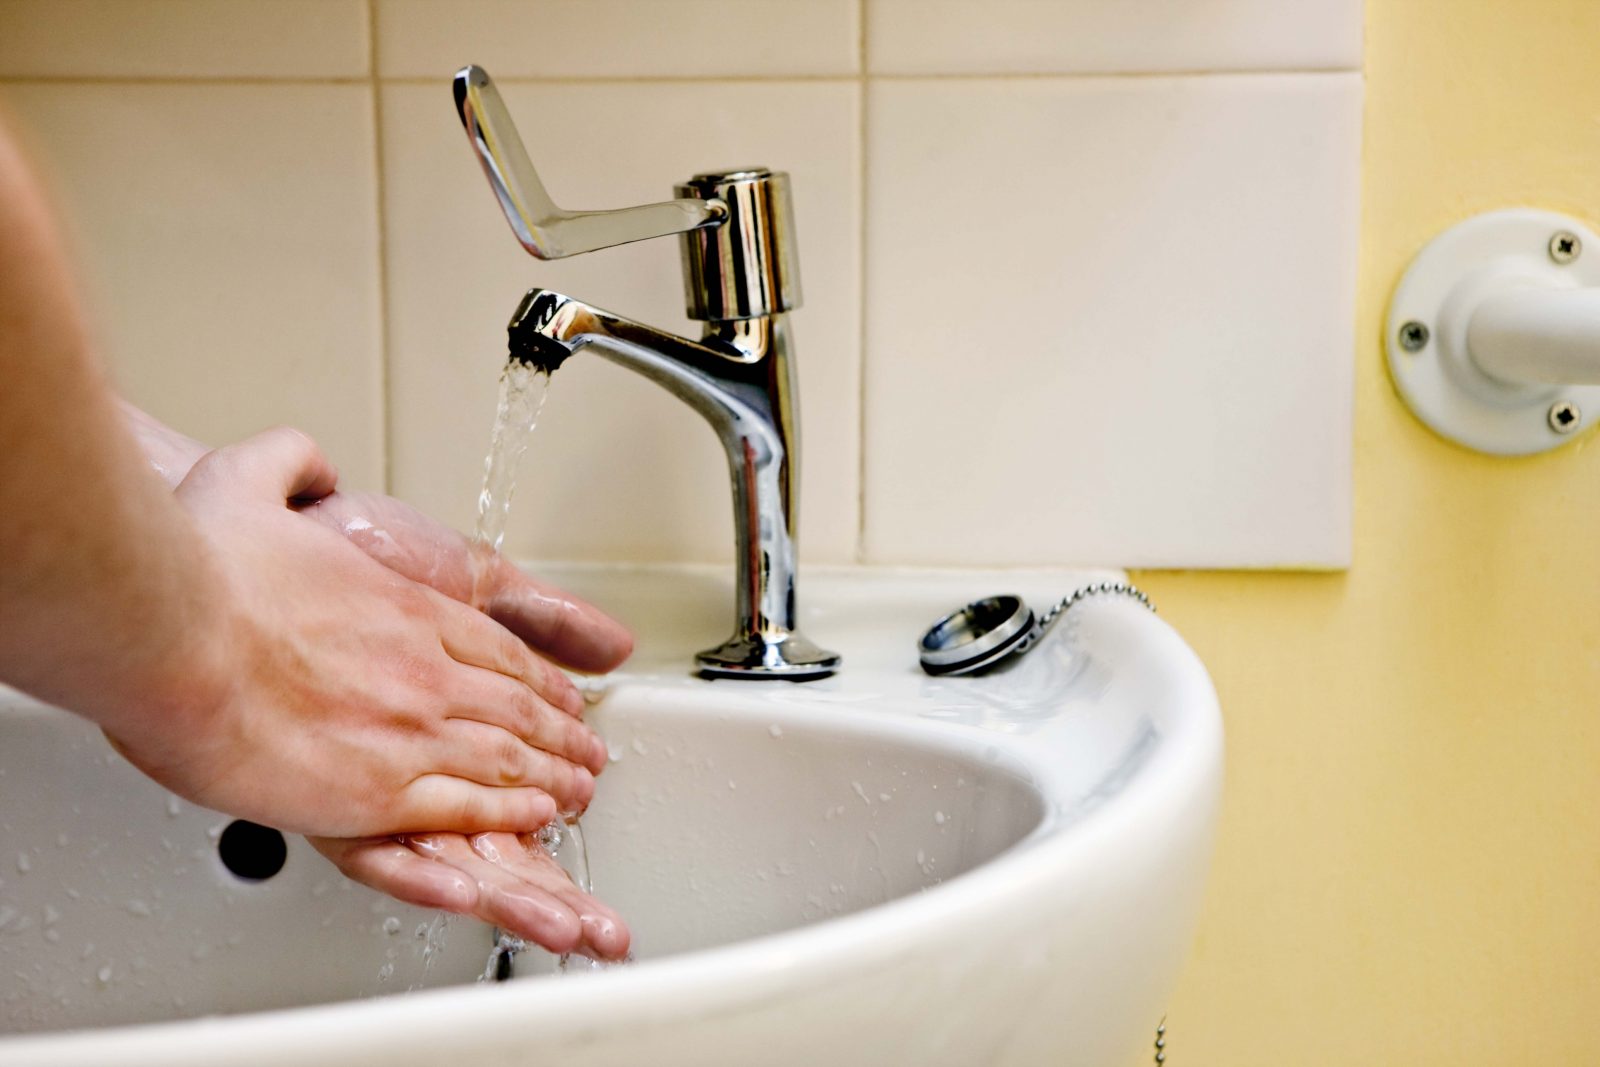 Santé Canada rappelle certains désinfectants pour les mains